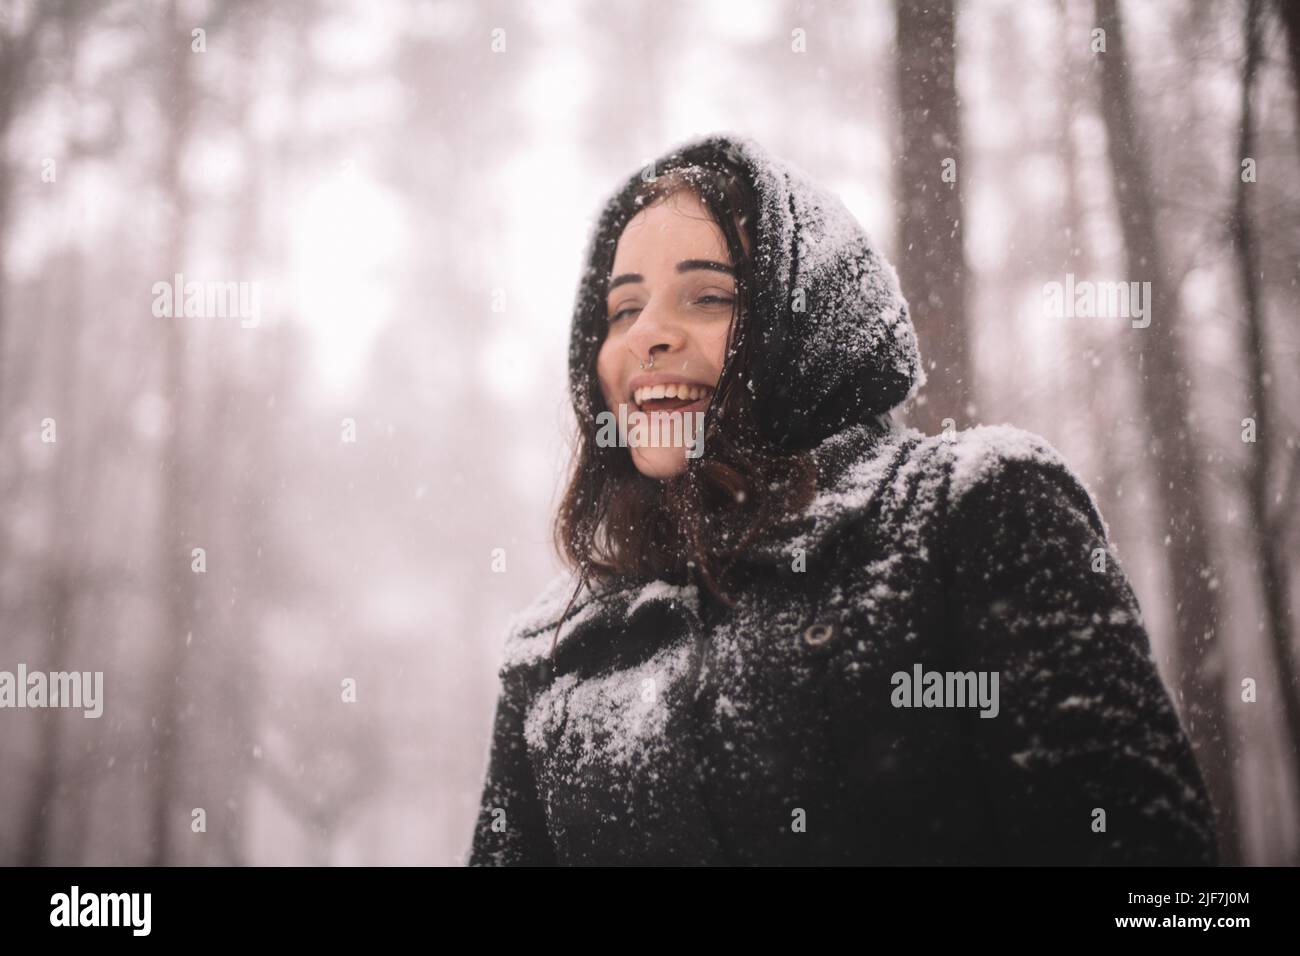 Porträt einer glücklichen jungen Frau, die während des Schneefalls im Wald steht Stockfoto